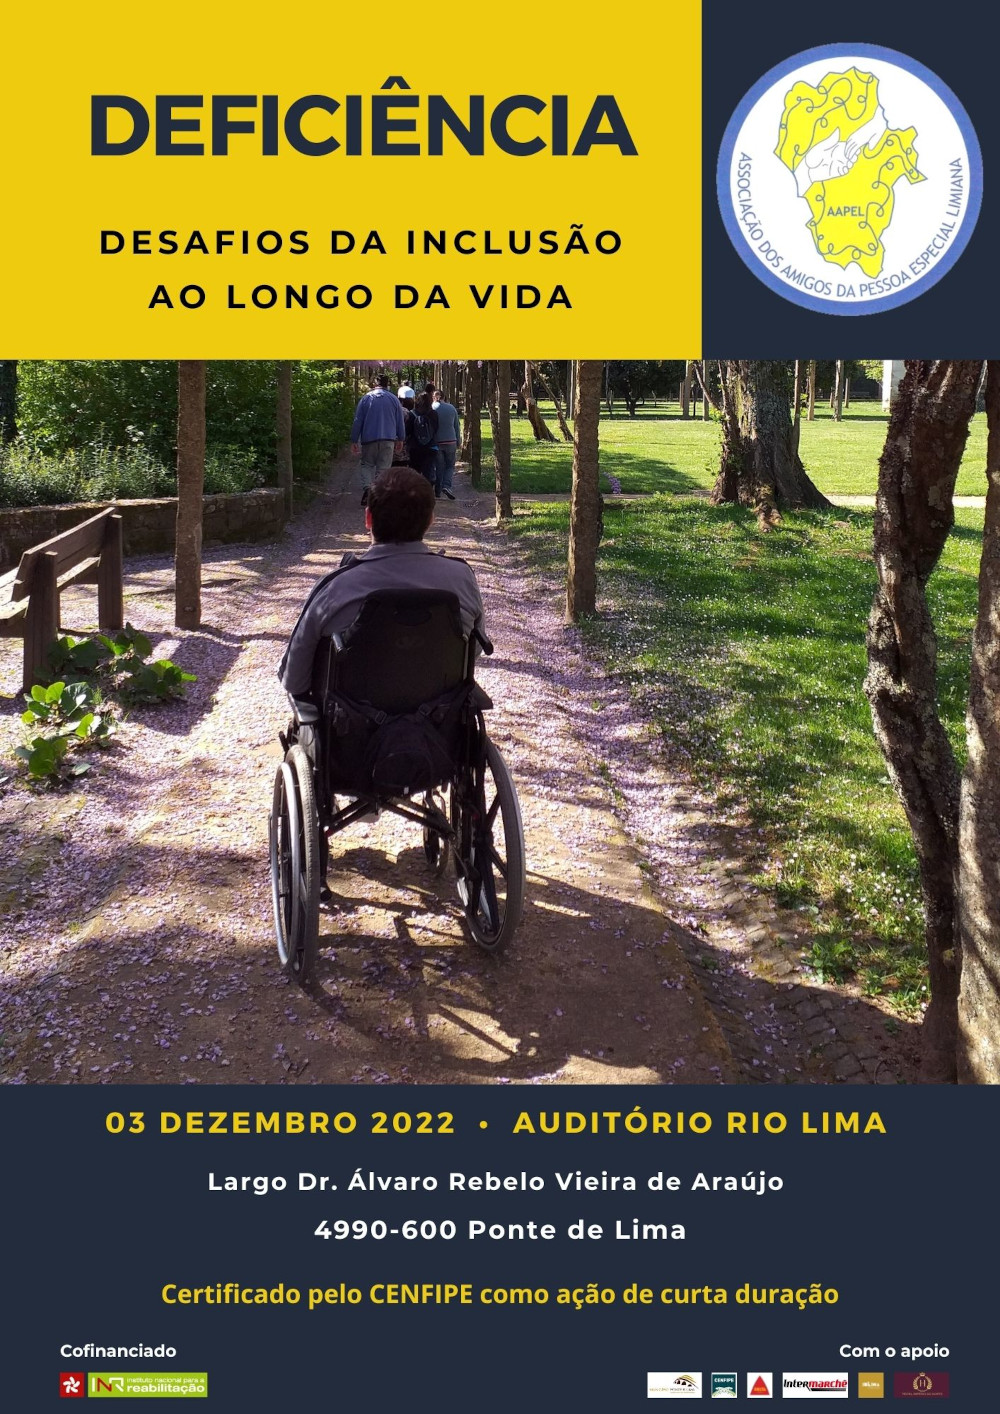 Cartaz promocional da Conferência «Deficiência: desafios da inclusão ao longo da vida». Titulo no topo com letras azuis em fundo amarelo, imagem de um cidadão em cadeiras de rodas e informação sobre o evento